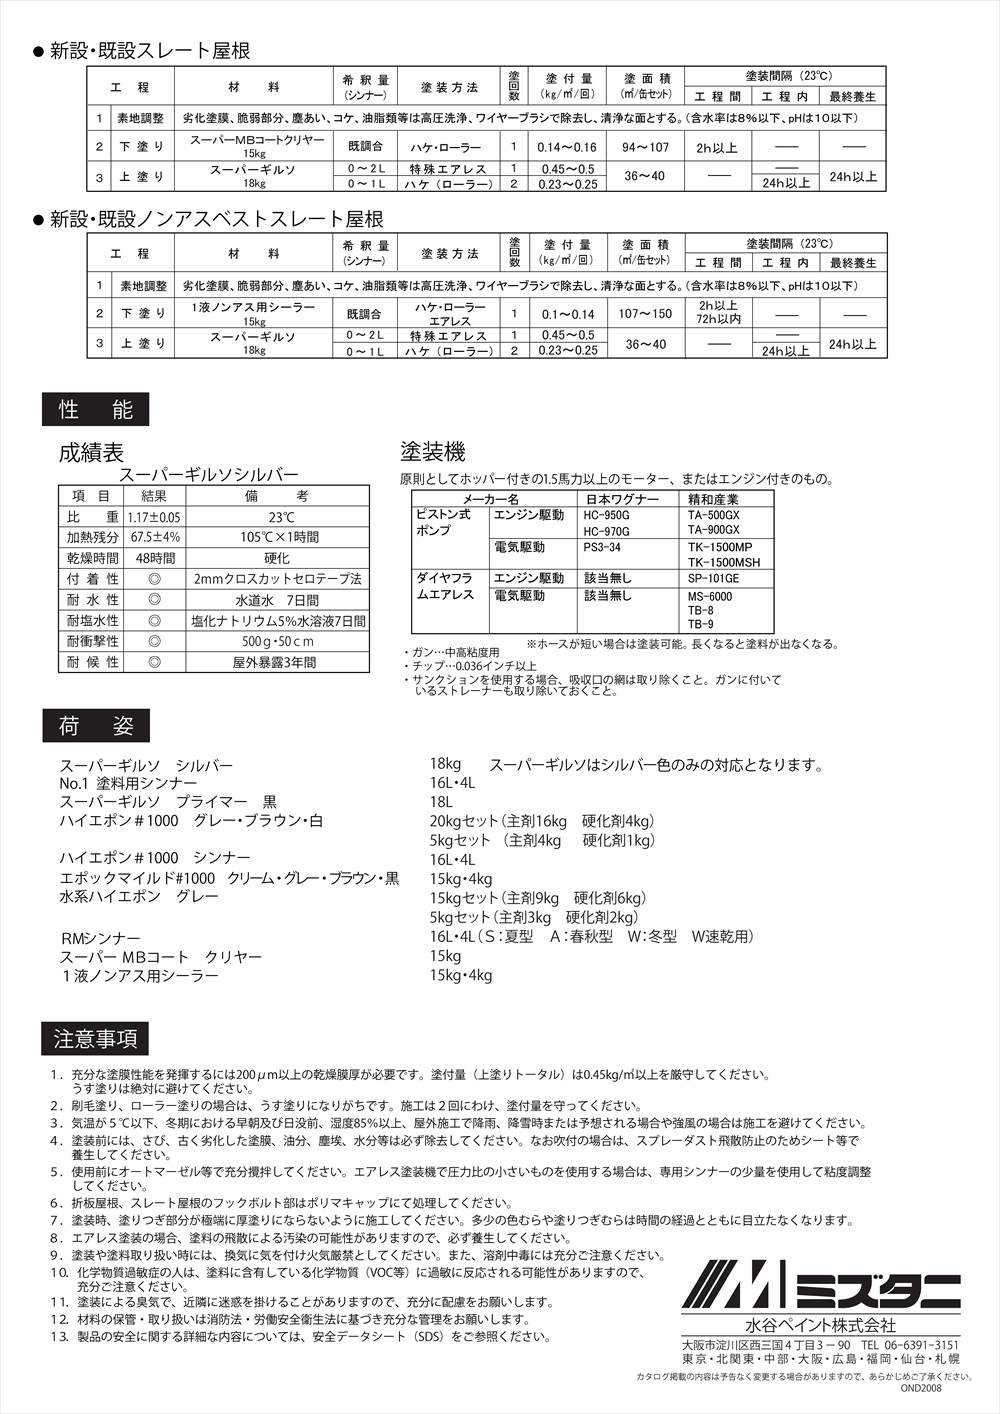 スーパーギルソ用プライマー 18L【メーカー直送便/代引不可】水谷